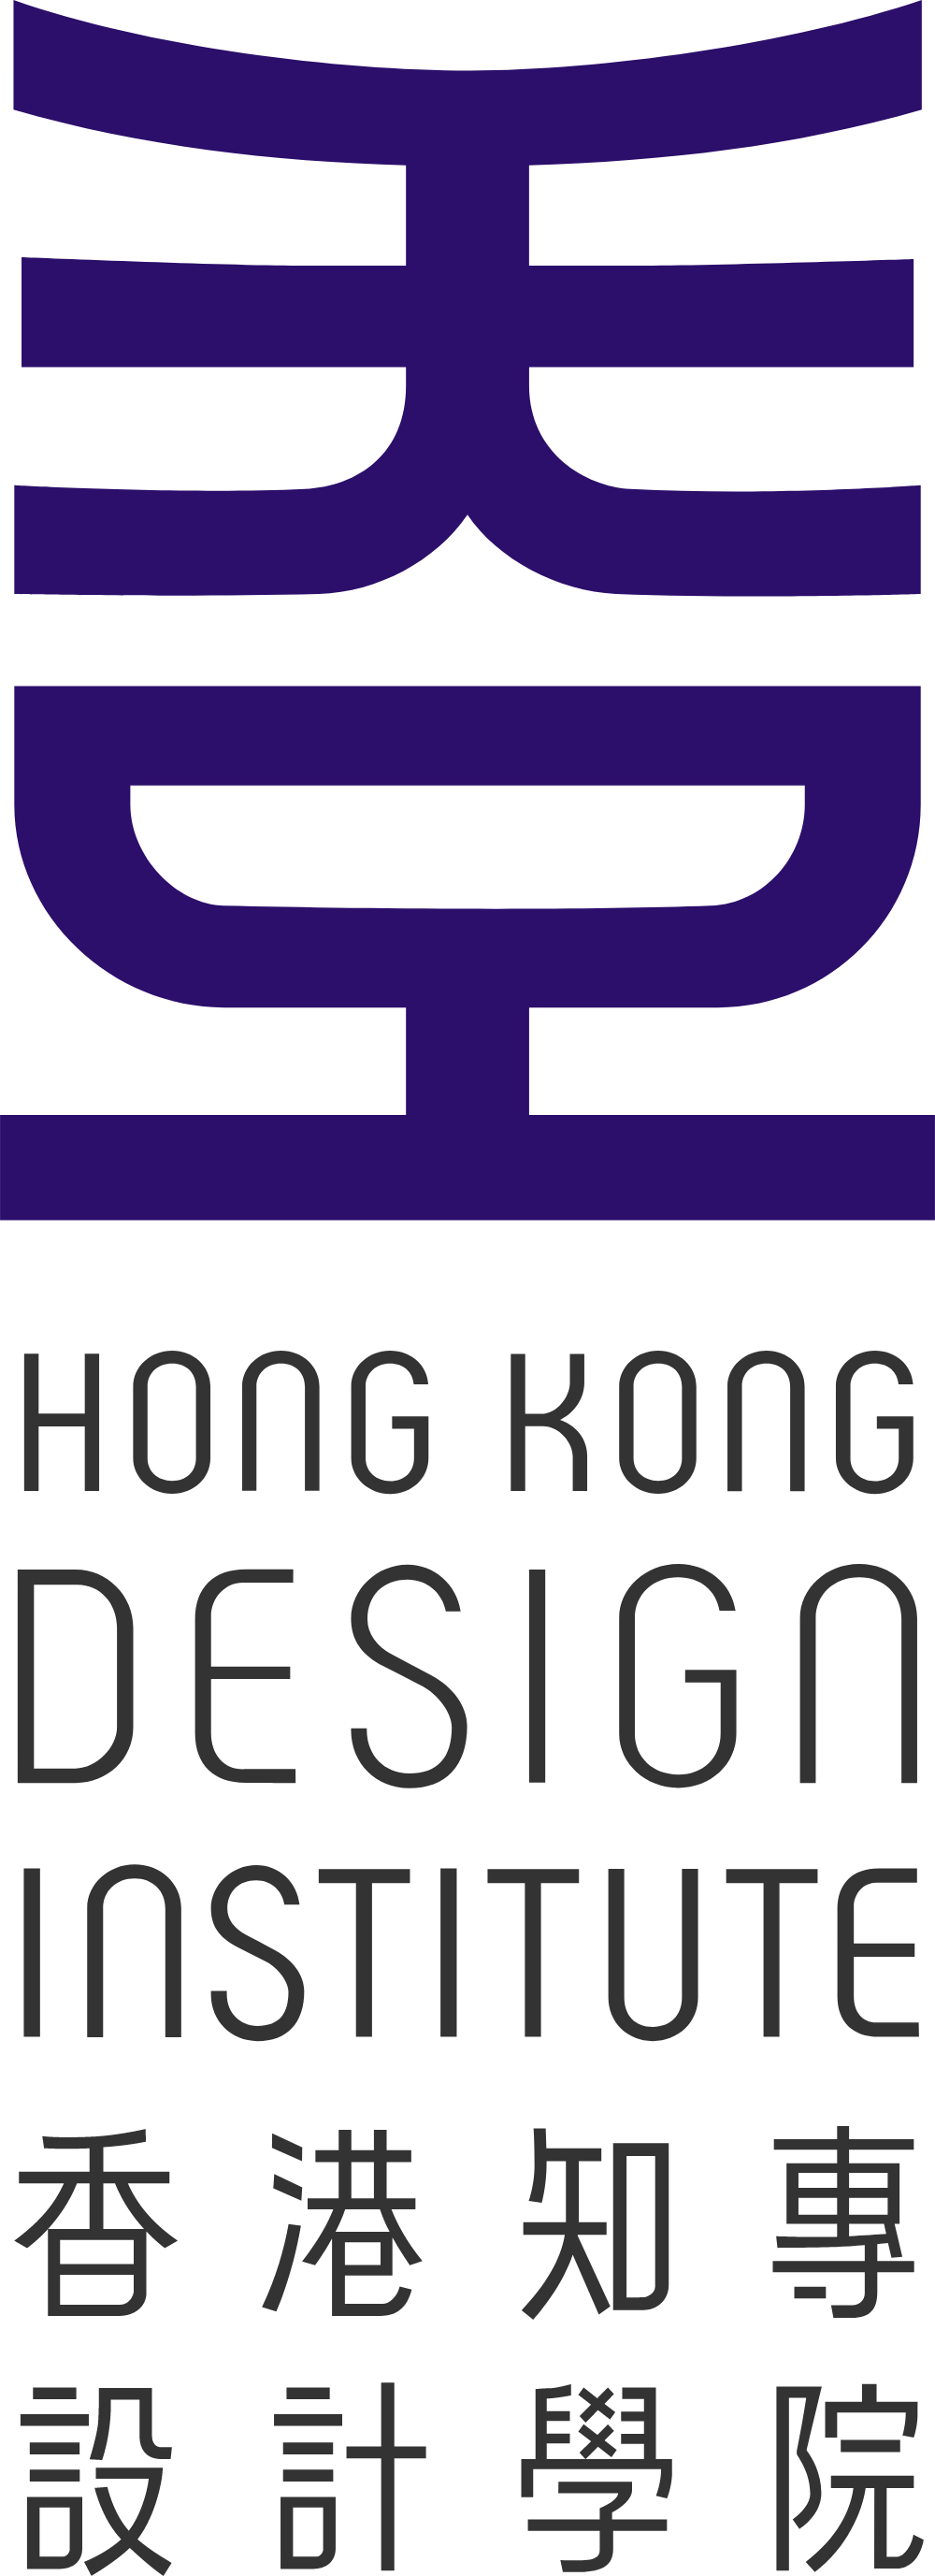 Hong Kong Design Institute Logo Logos